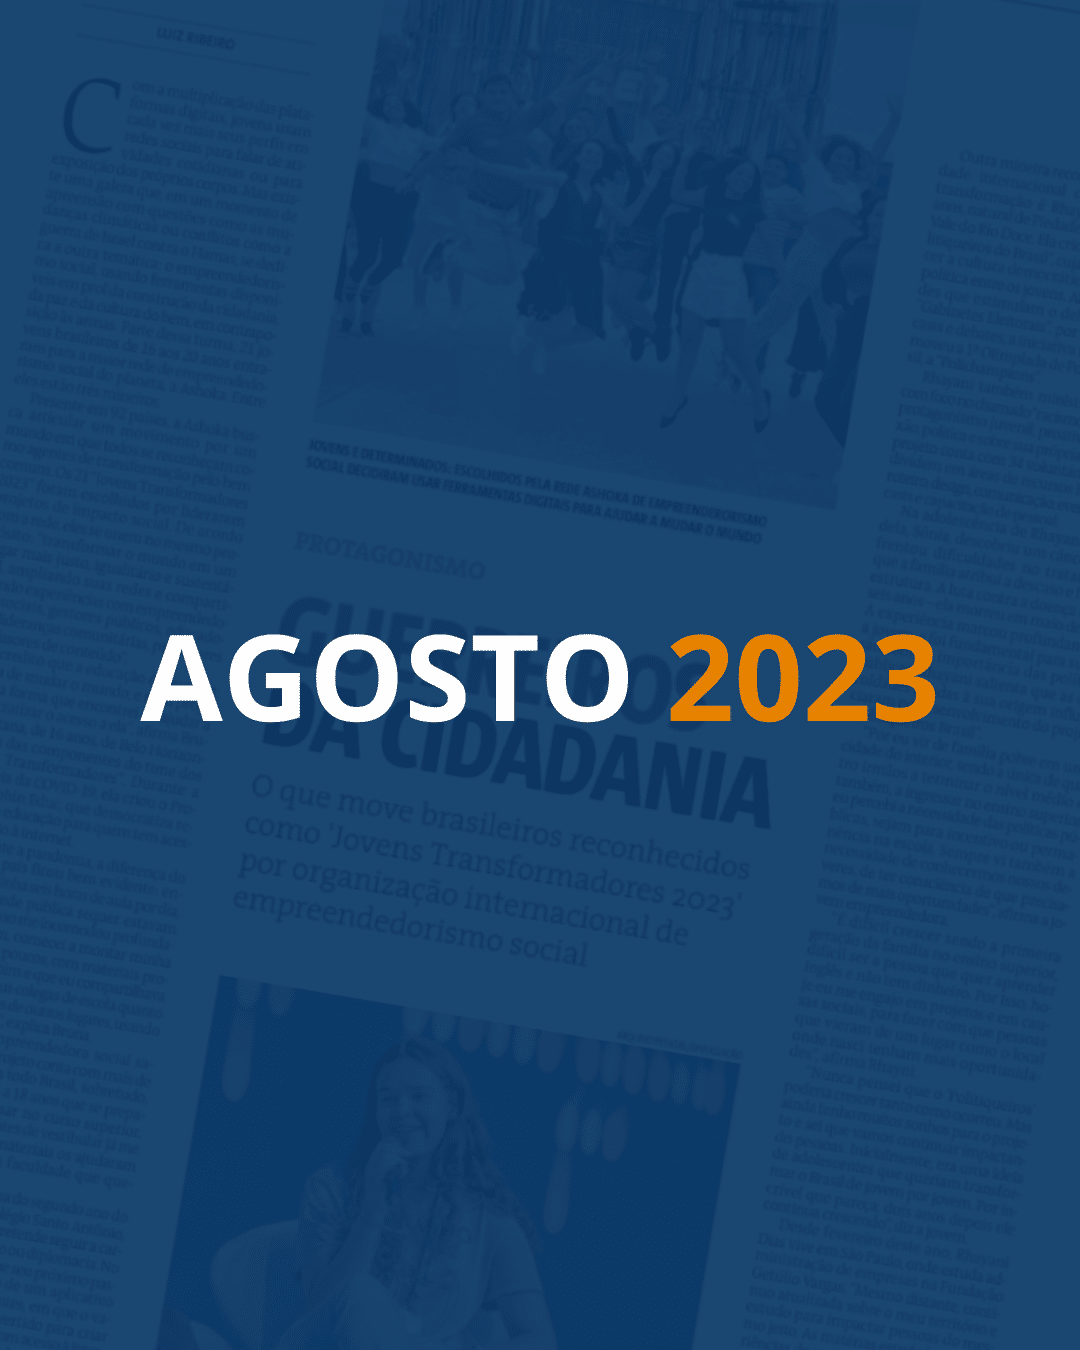 Fundo com uma página de jornal e um filtro azul escuro por cima. Em destaque, lê-se "AGOSTO" em branco e "2023" em laranja